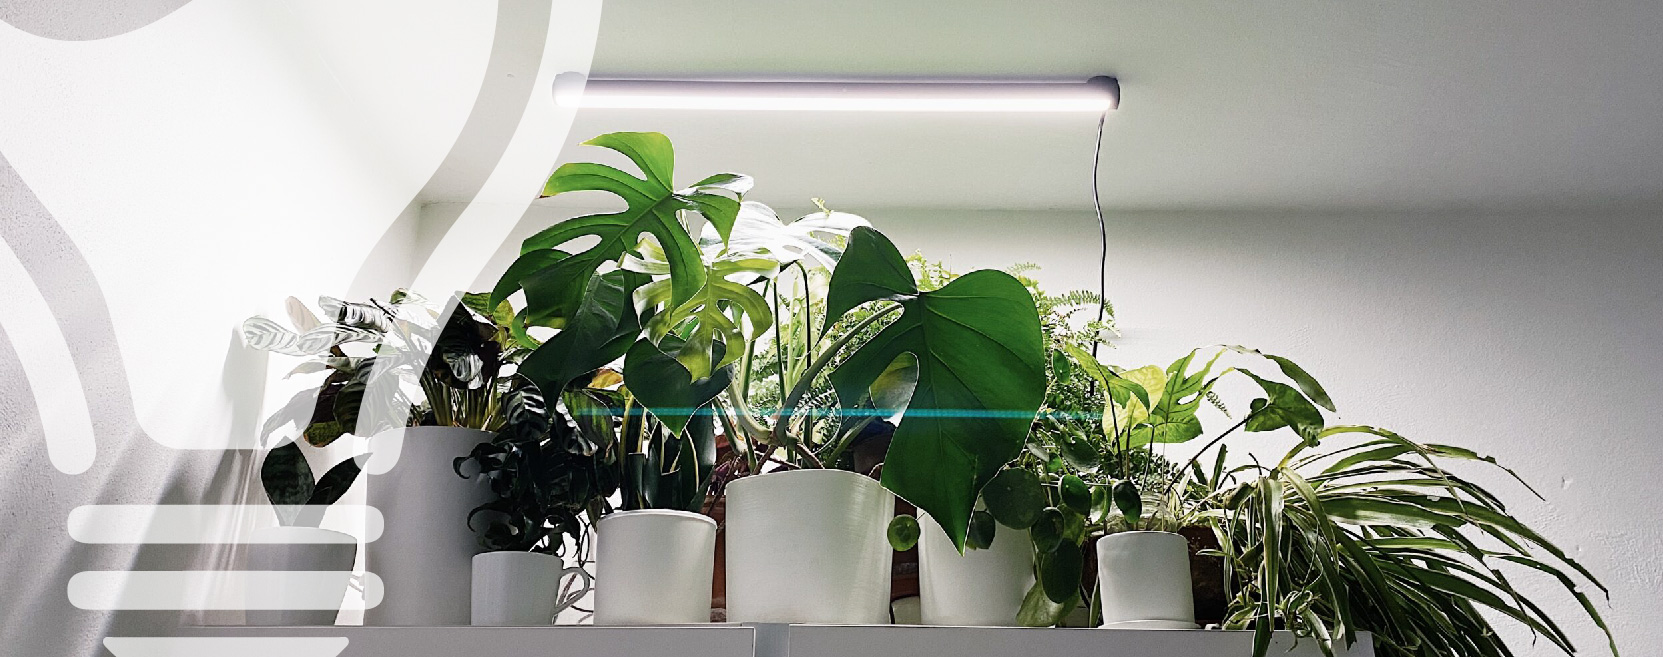 Illuminazione LED per piante: la guida definitiva